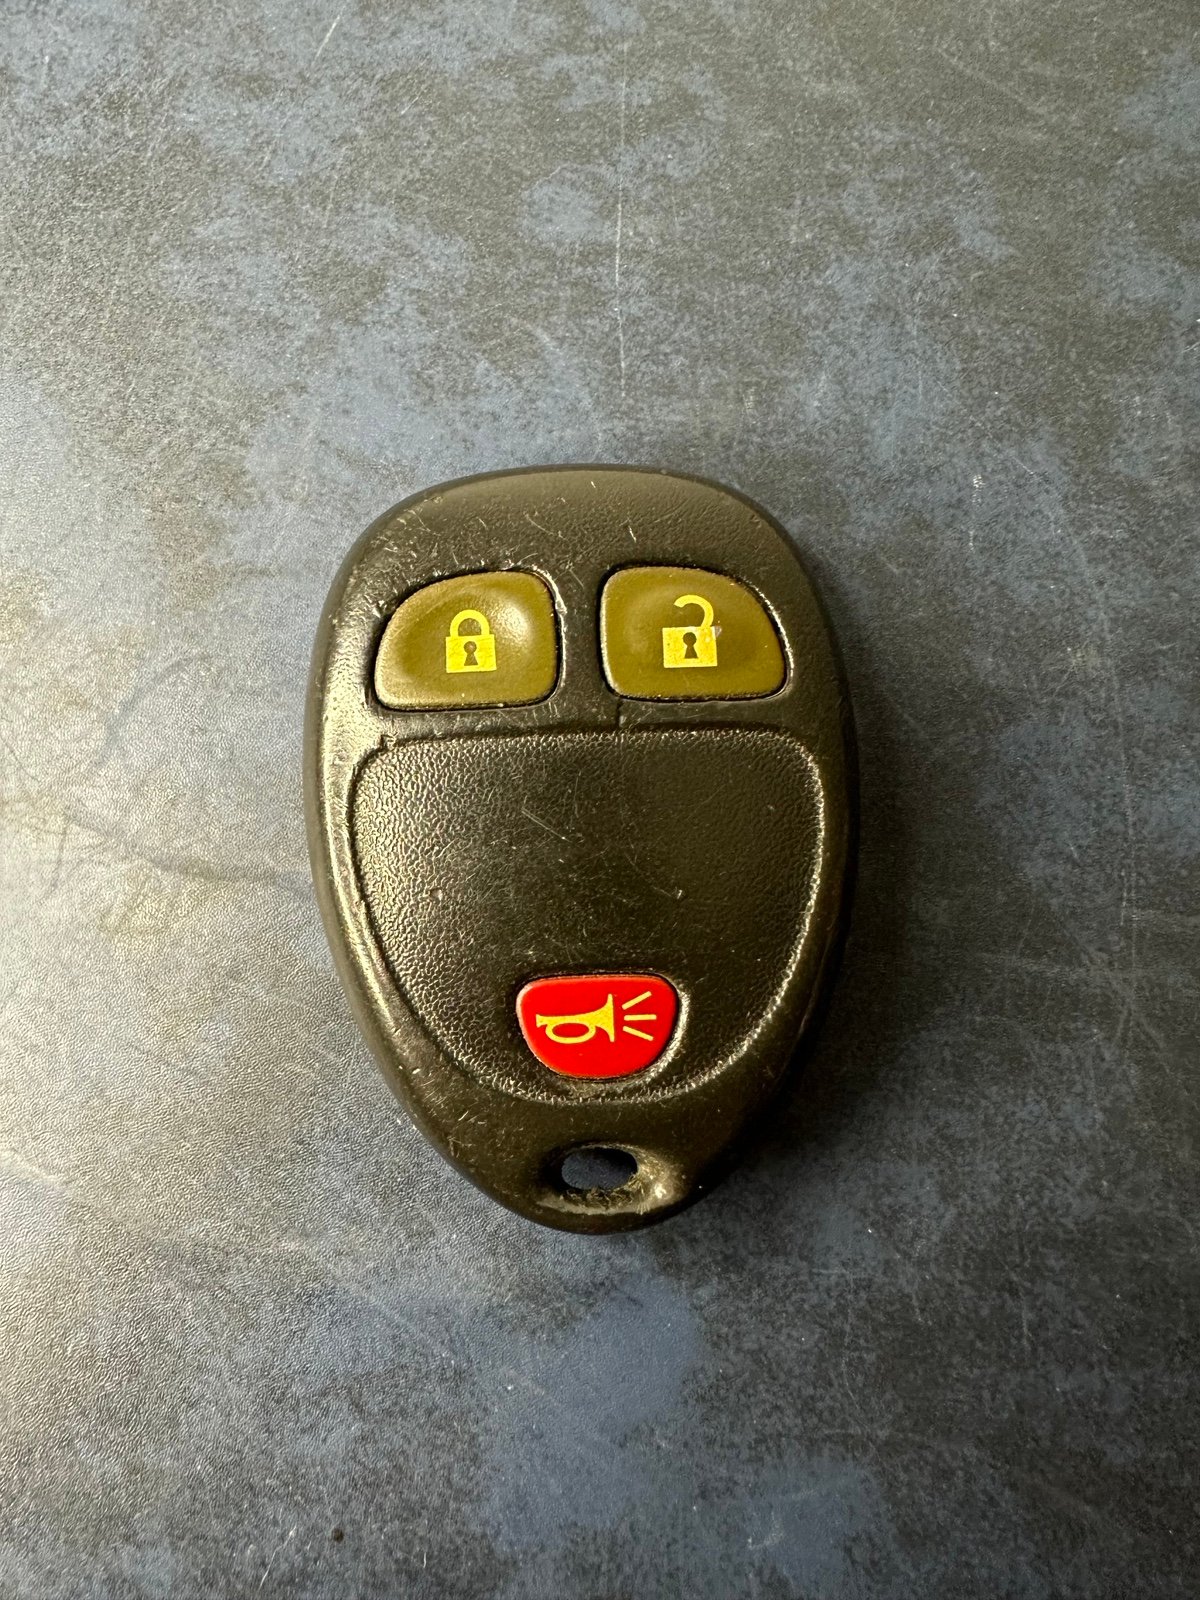 OEM Chevy GM Remote Start Keyless Entry Remote Key Fob 